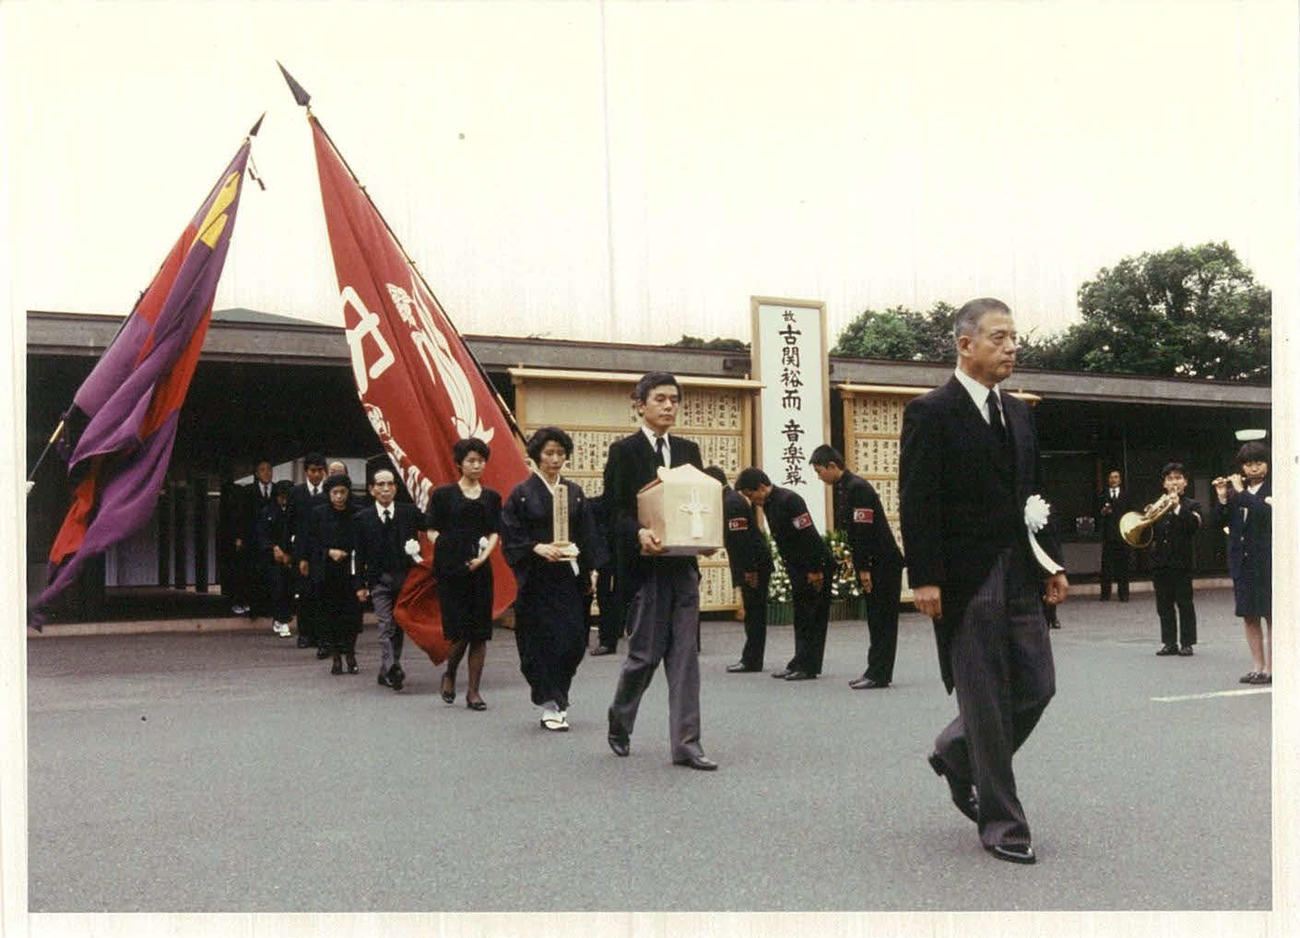 89年9月、青山葬儀場で行われた古関氏の音楽葬で、早大の校旗と慶大の三色旗が掲げられた。遺骨を持つのは長男正裕氏